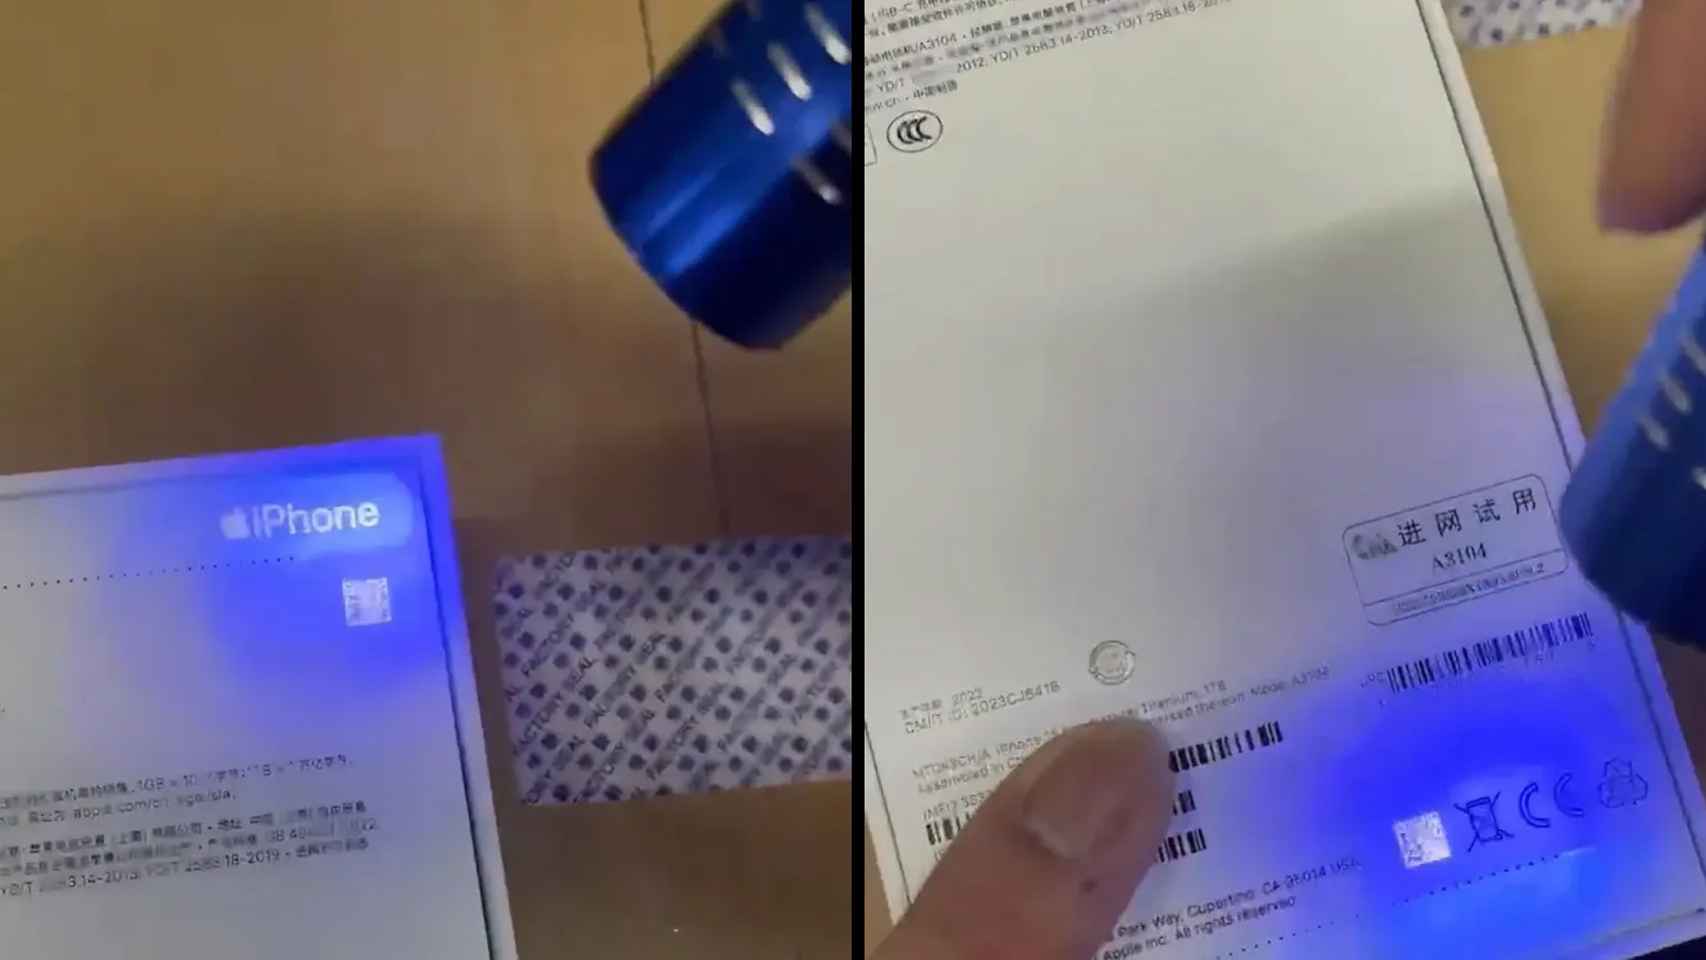 Captura del vídeo en el que aparece una persona apuntando con una linterna UV a la caja de un iPhone.